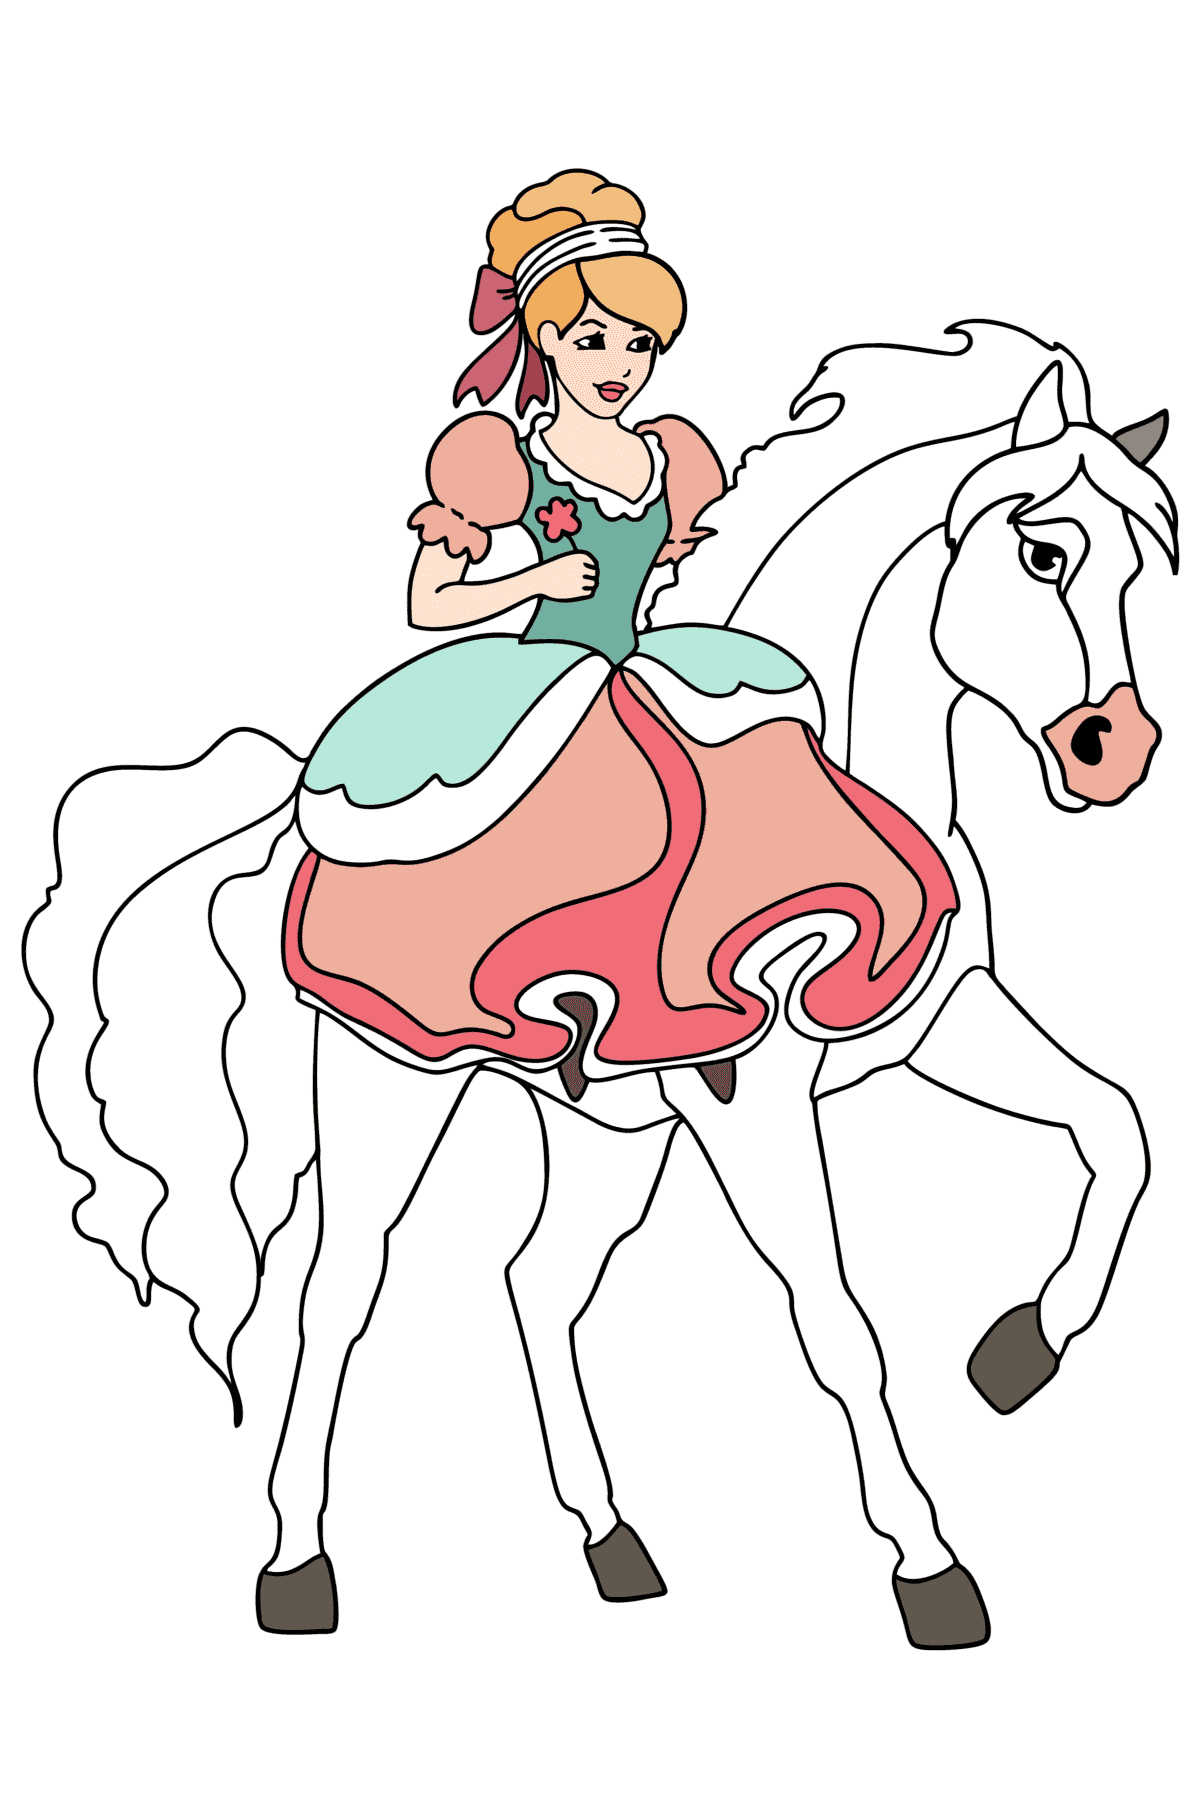 Målarbild Prinsessan till häst - Målarbilder För barn